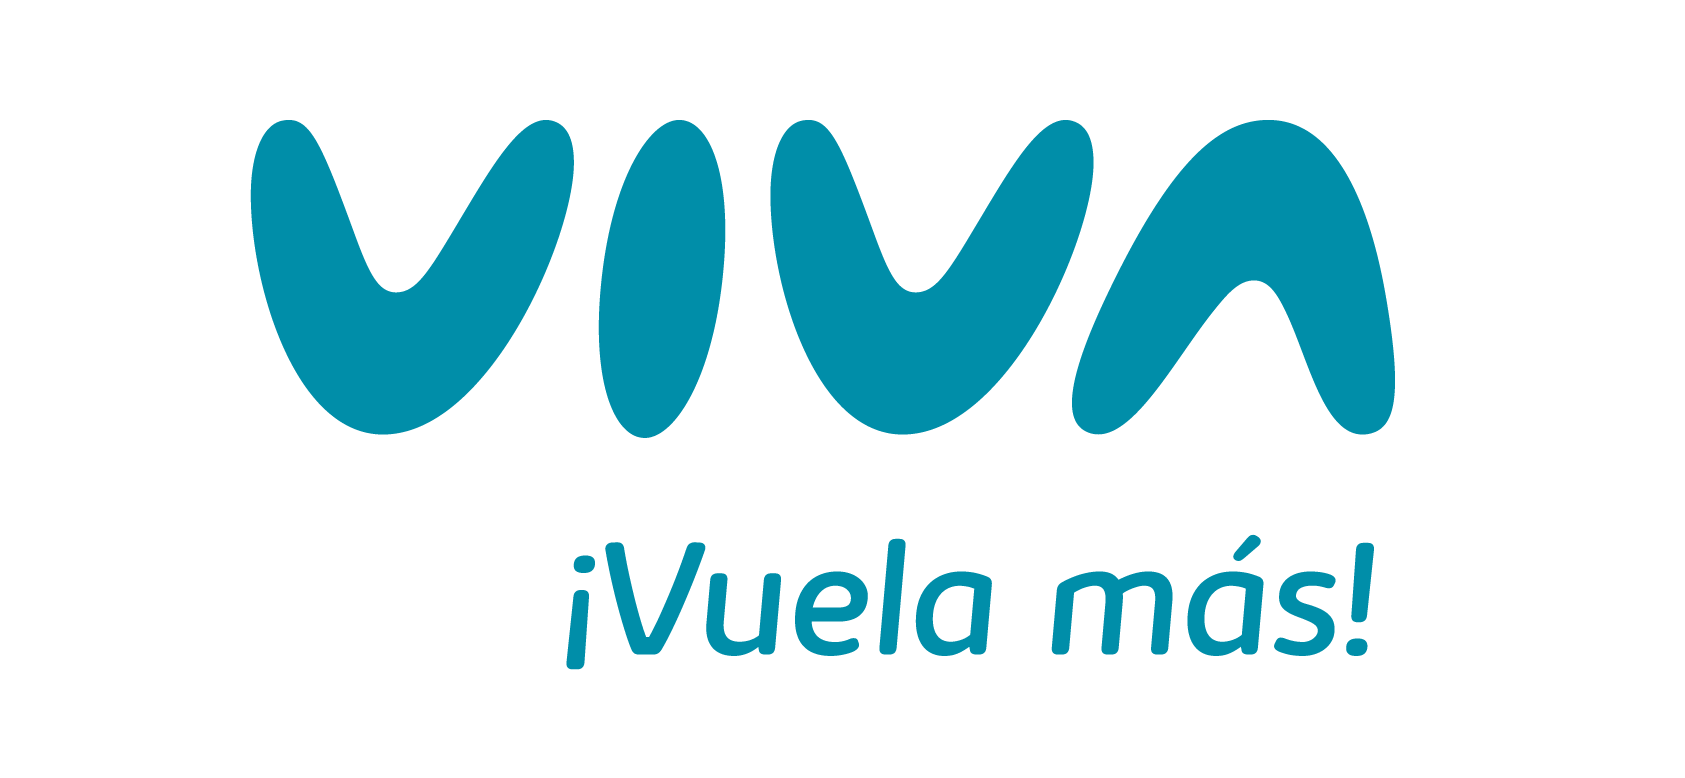 Grupo Viva (On Watch)